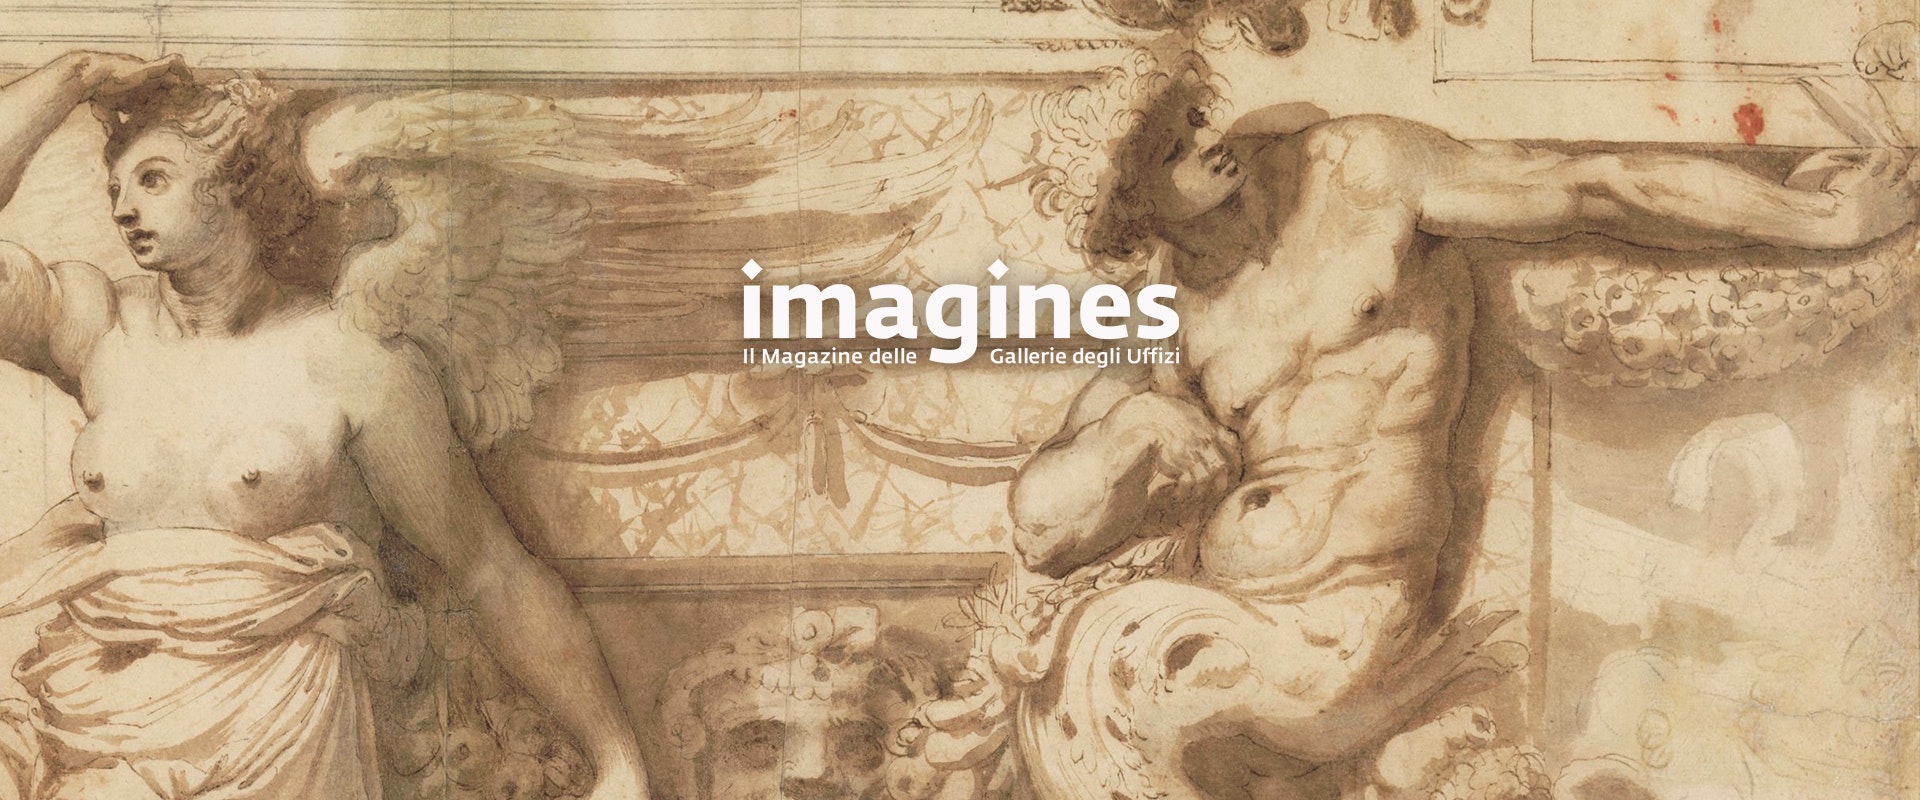 Online IMAGINES n.3: la rivista scientifica degli Uffizi